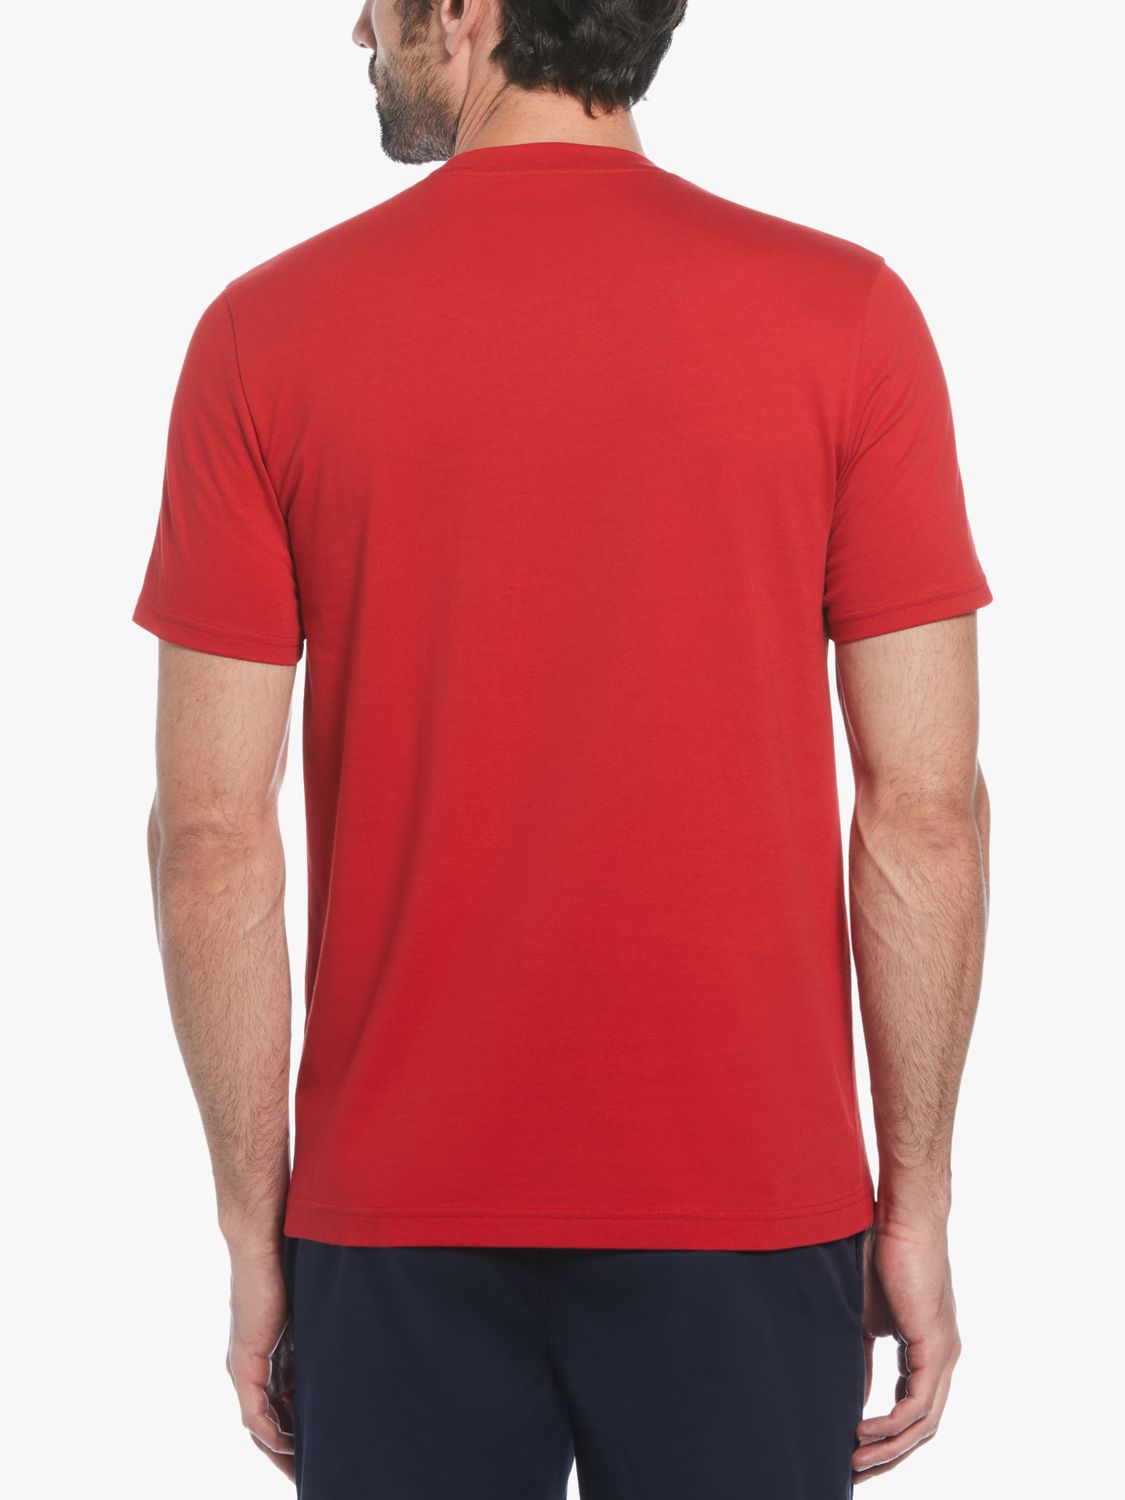 Original Penguin Short Sleeve Spliced Logo T-Shirt, Red, L